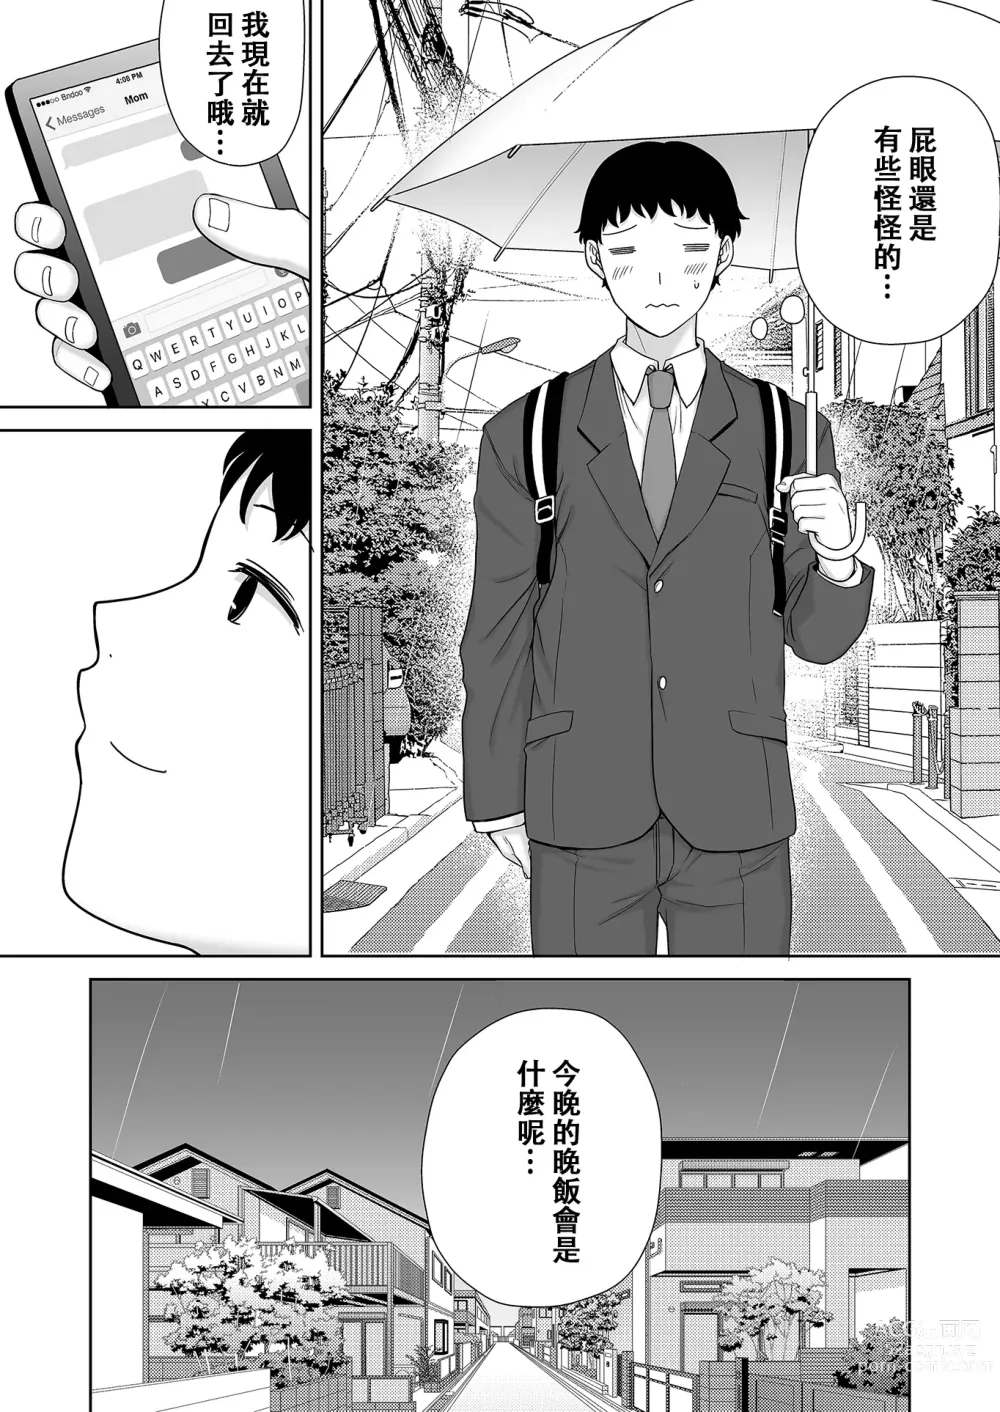 Page 474 of doujinshi Boku no Kaa-san de, Boku no Suki na Hito. 1-8